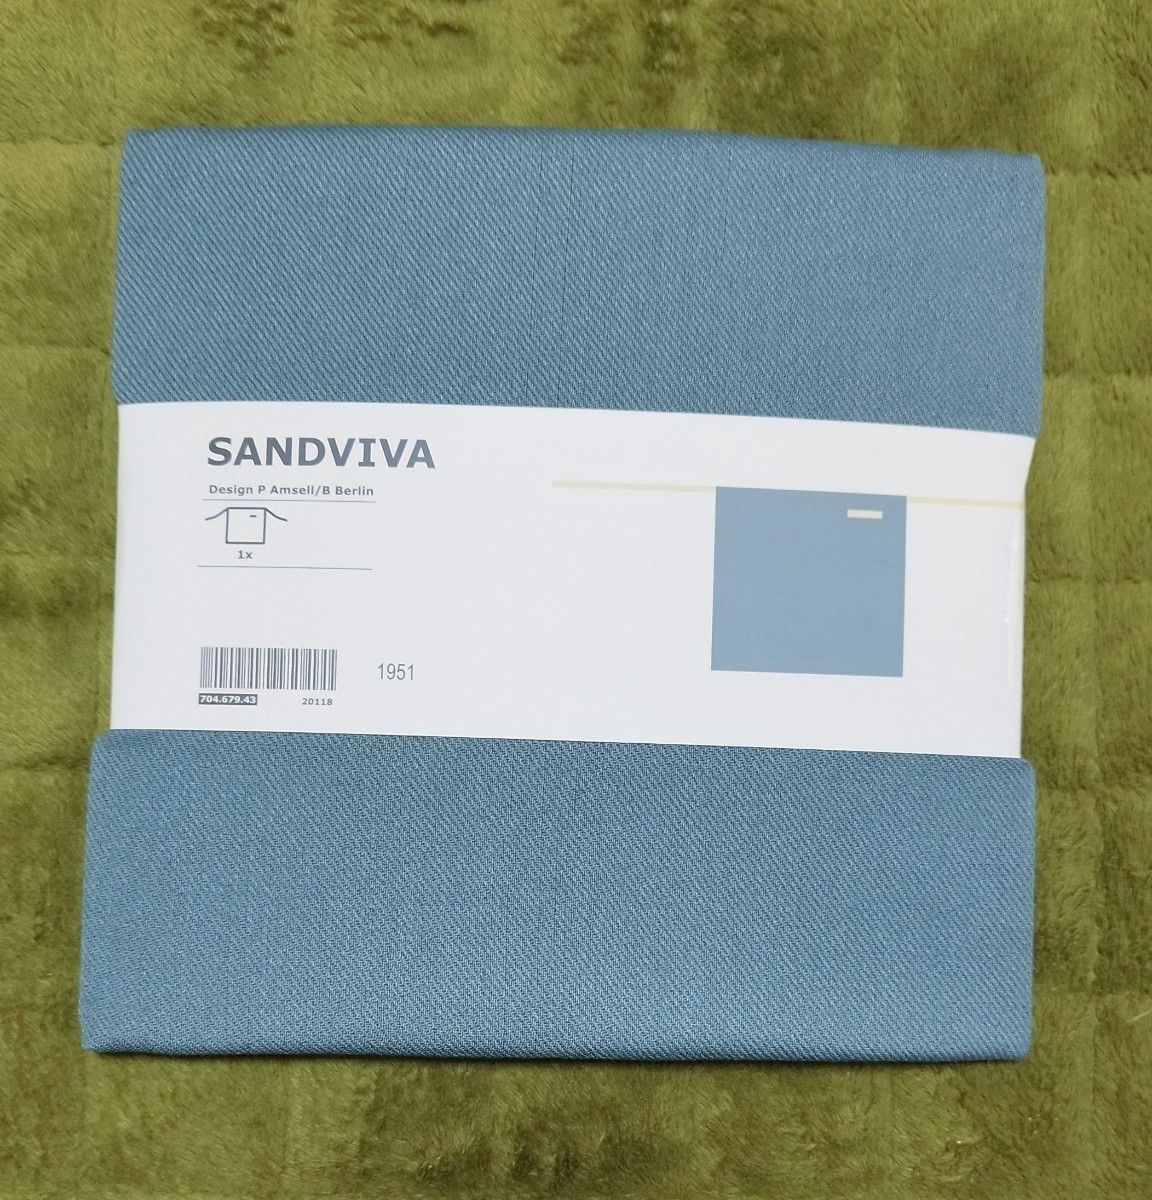  не использовался * б/у 3 позиций комплект IKEA/ Ikea SANDVIVA Sand vi -va талия фартук голубой 